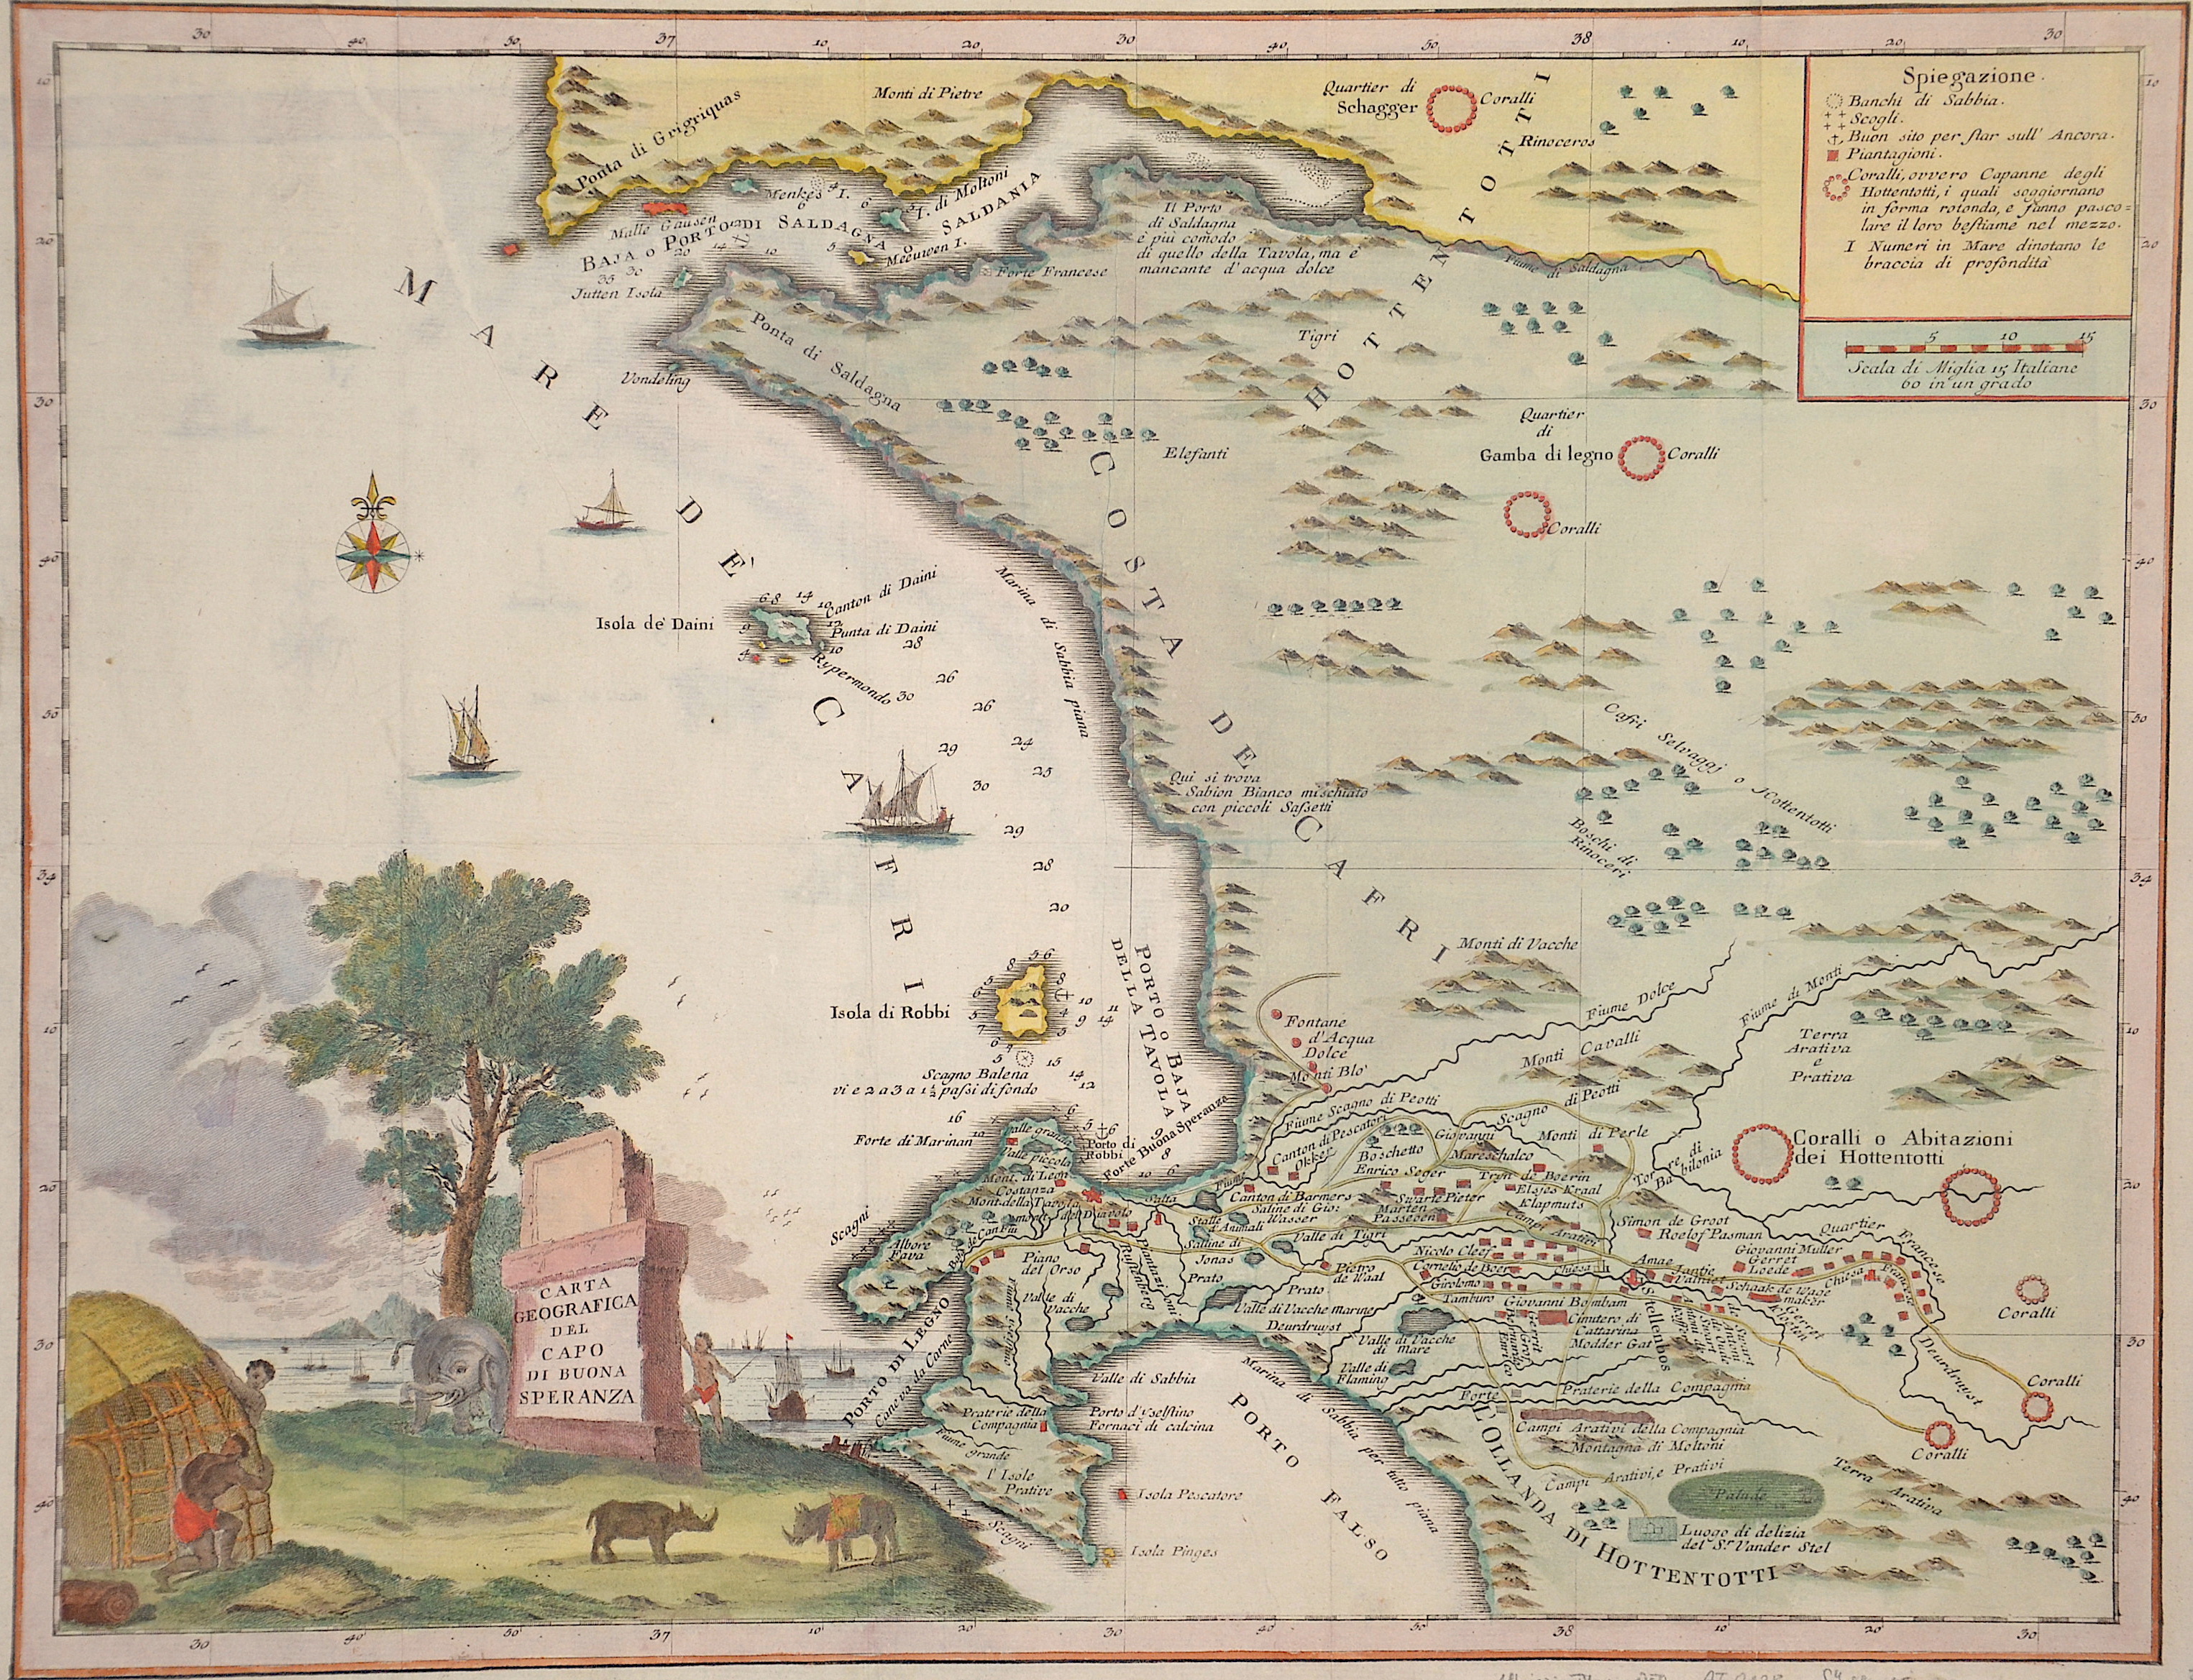 Albrizzi Giovanni Battista Carta geographica del Capo di Buona Speranza